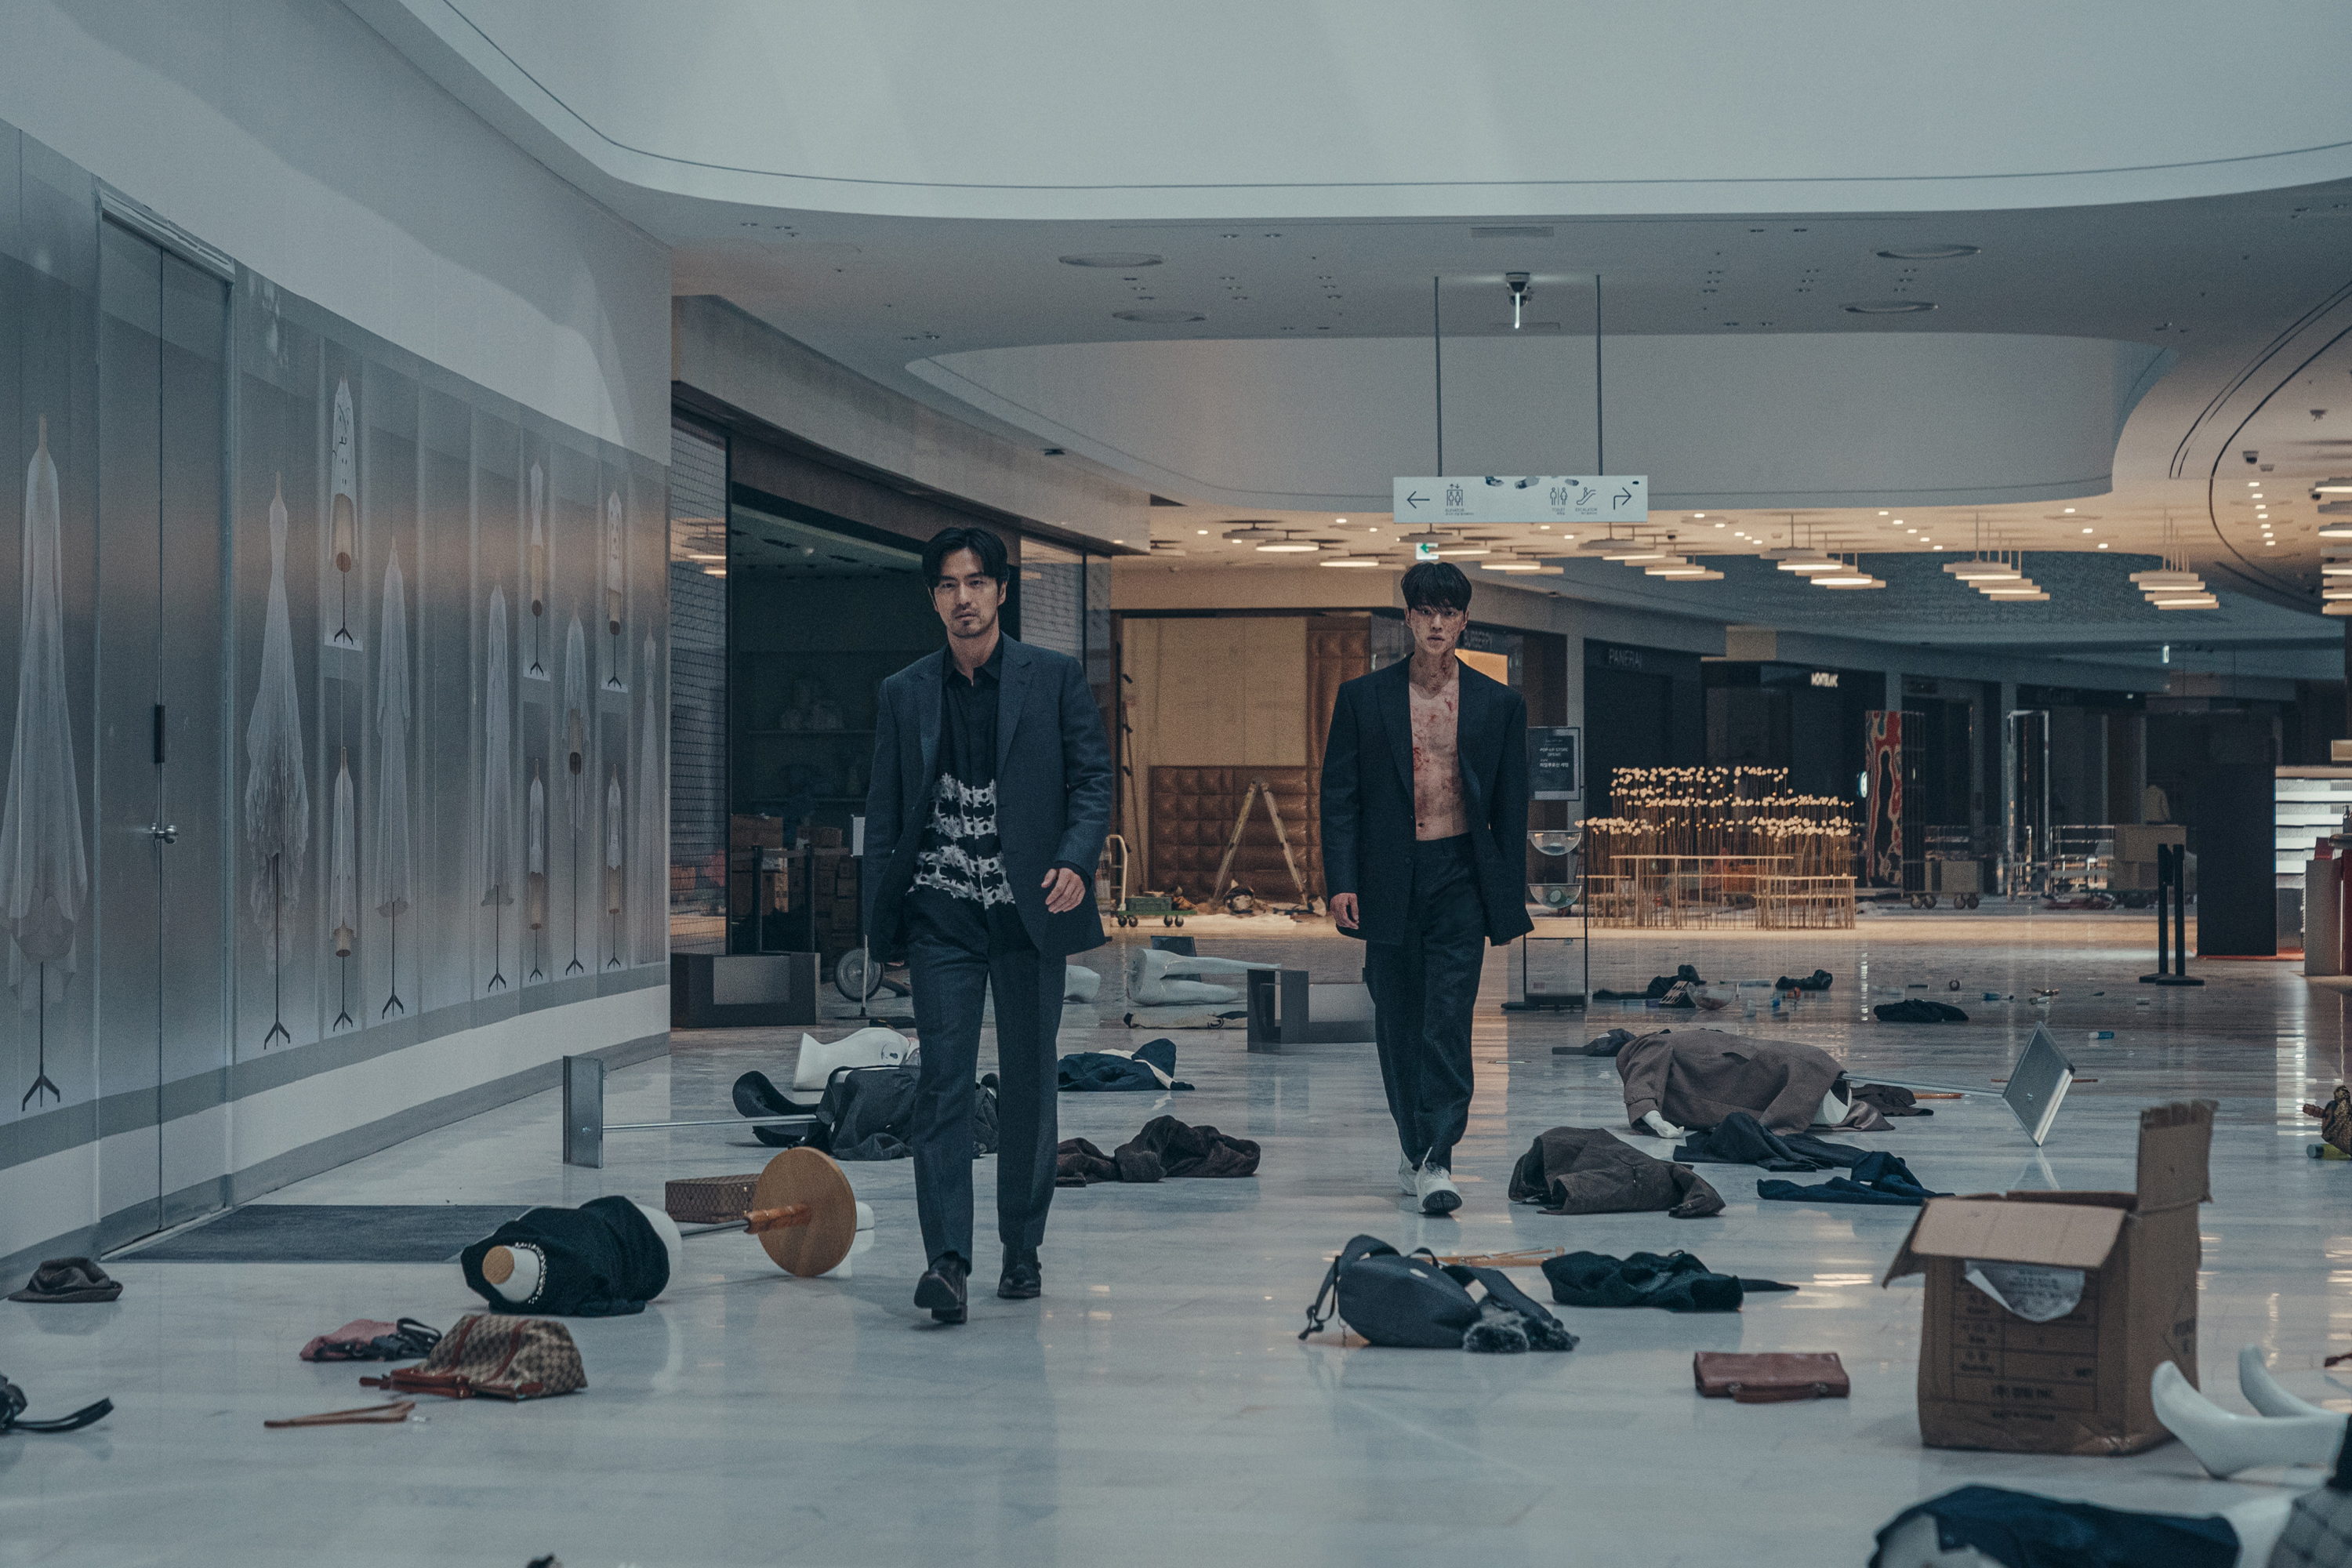 Lee Jin-uk and Song Kang in <i></p>
<p>منزل جميل</i> (بإذن من Netflix) ” /></p>
<p>Lee Jin-UK و Song Kang In <i>منزل جميل</i></p>
<p>ستعود Kang Song Kang في كوريا الجنوبية لموسم آخر من سلسلة الرعب الجريئة هذه. الموسم الأول من <i>منزل جميل</i>, تم إصداره في ديسمبر 2020 ، يتبع طالب المدارس الثانوية الانتحارية Cha Hyun-soo (التي يتم تشغيل. تم تجديد العرض ، الذي حصل على أتباع كبير ، منذ ذلك الحين لمدة موسمين أخريين ، ومن المقرر إصدار الموسم الثاني في الربع الرابع من عام 2023. الموسم الثاني من <i>منزل جميل</i> .</p>
<h2><span id=